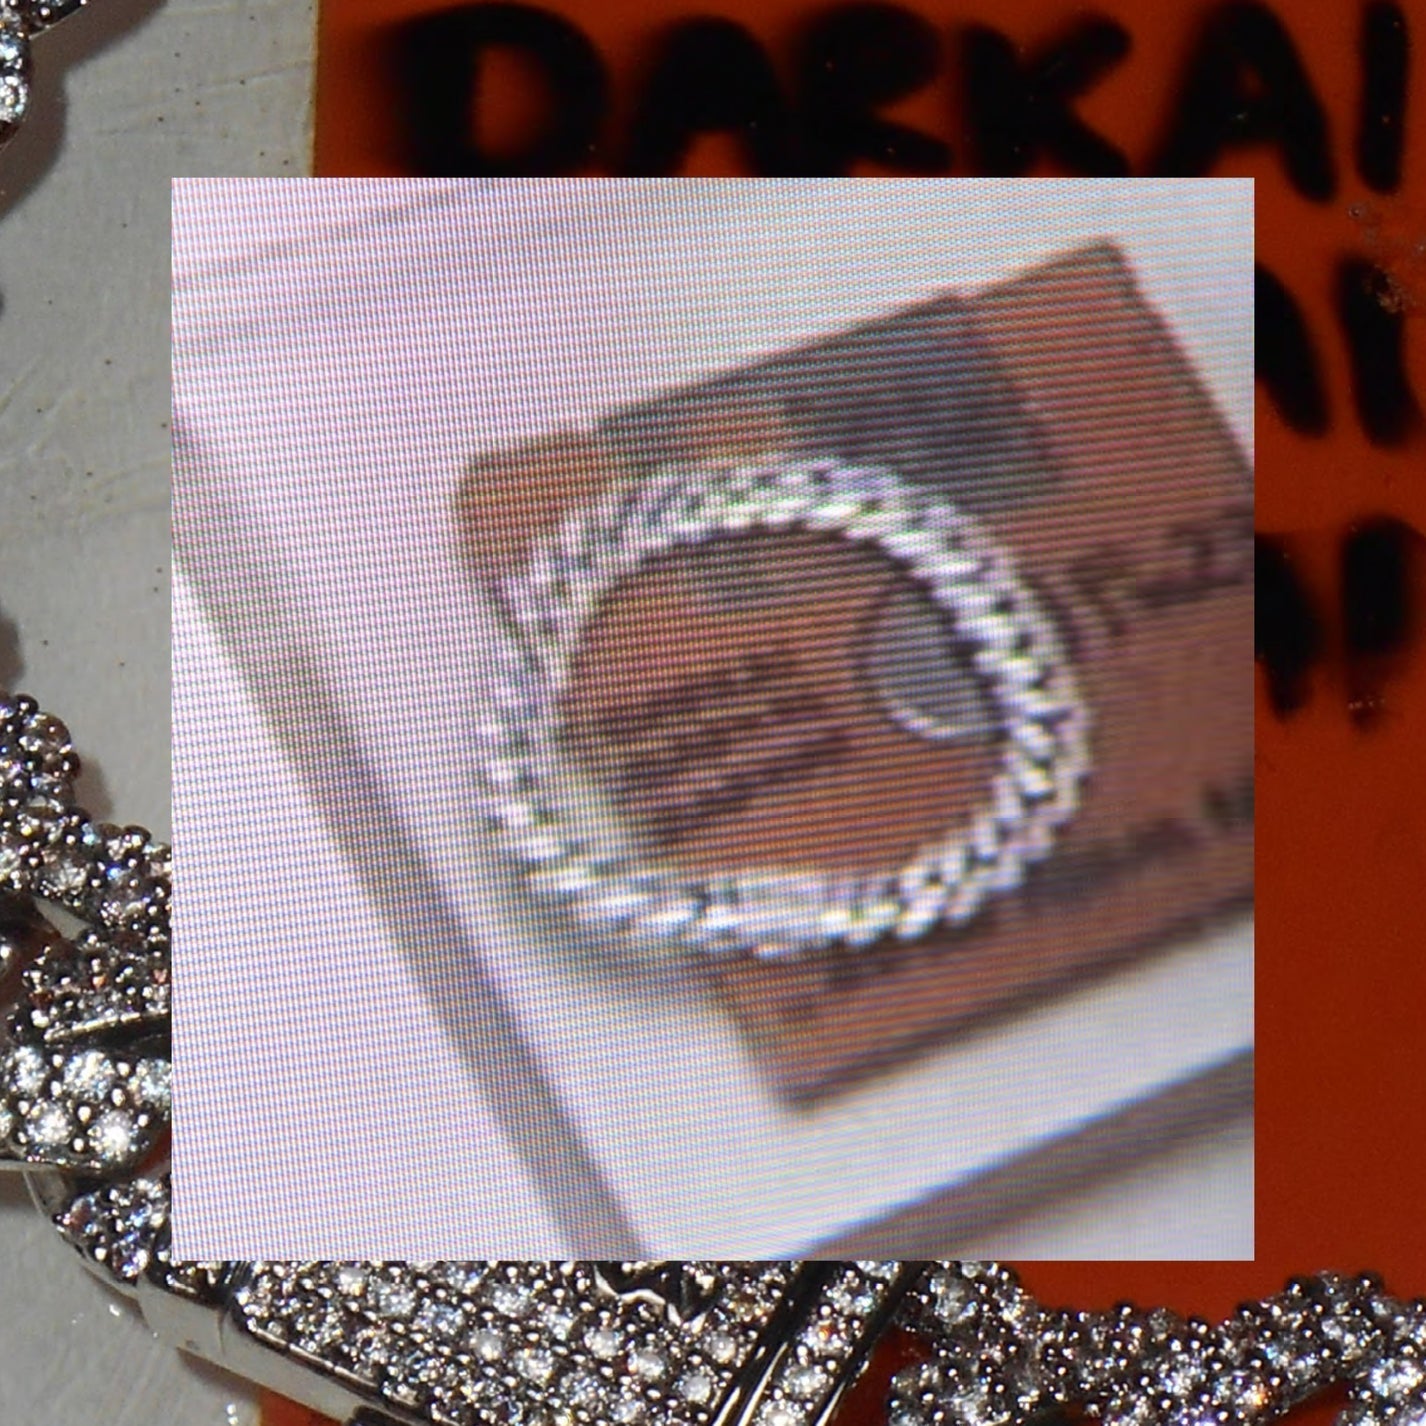 DARKAI mini prong pavé bracelet on floppy disk